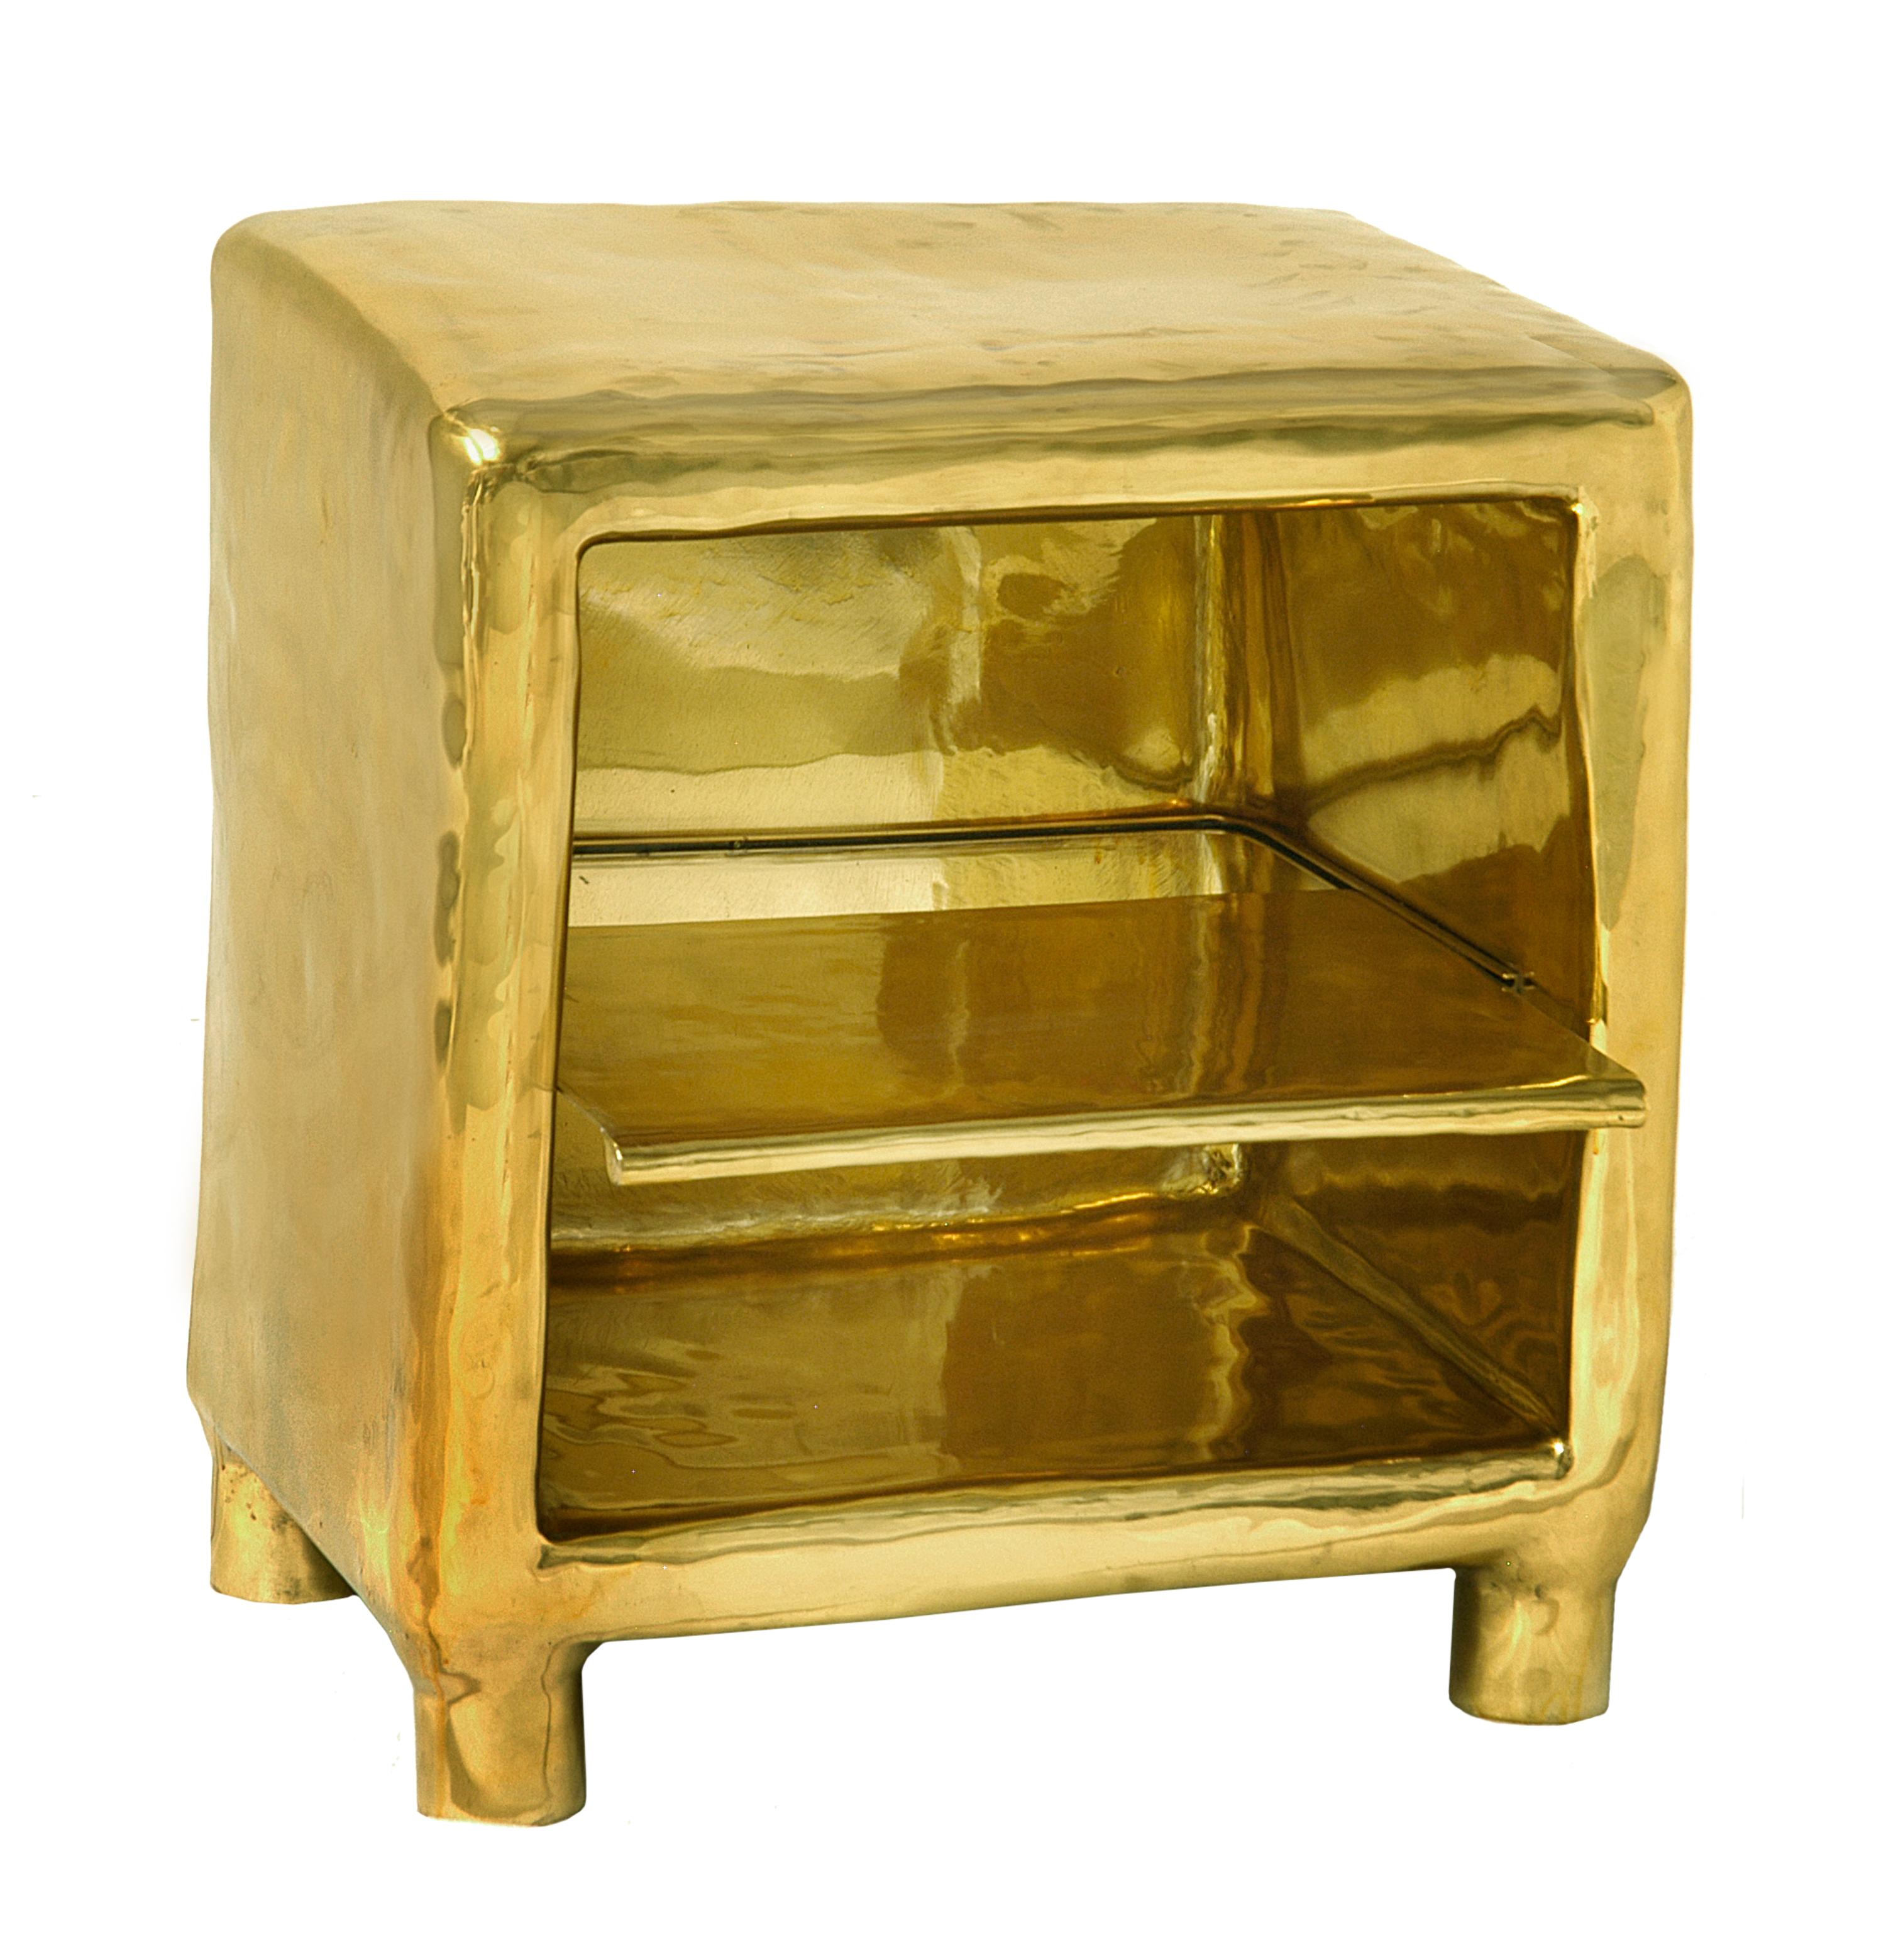 Cheer Bedside Table in Brass von Scarlet Splendour ist ein opulenter Nachttisch mit einer praktischen Ablage. Schön auch in der Nähe eines Sofas.

Die Fools' Gold Collection mit amorphen Formen aus Messing ist eine Hommage an das Erbe der indischen